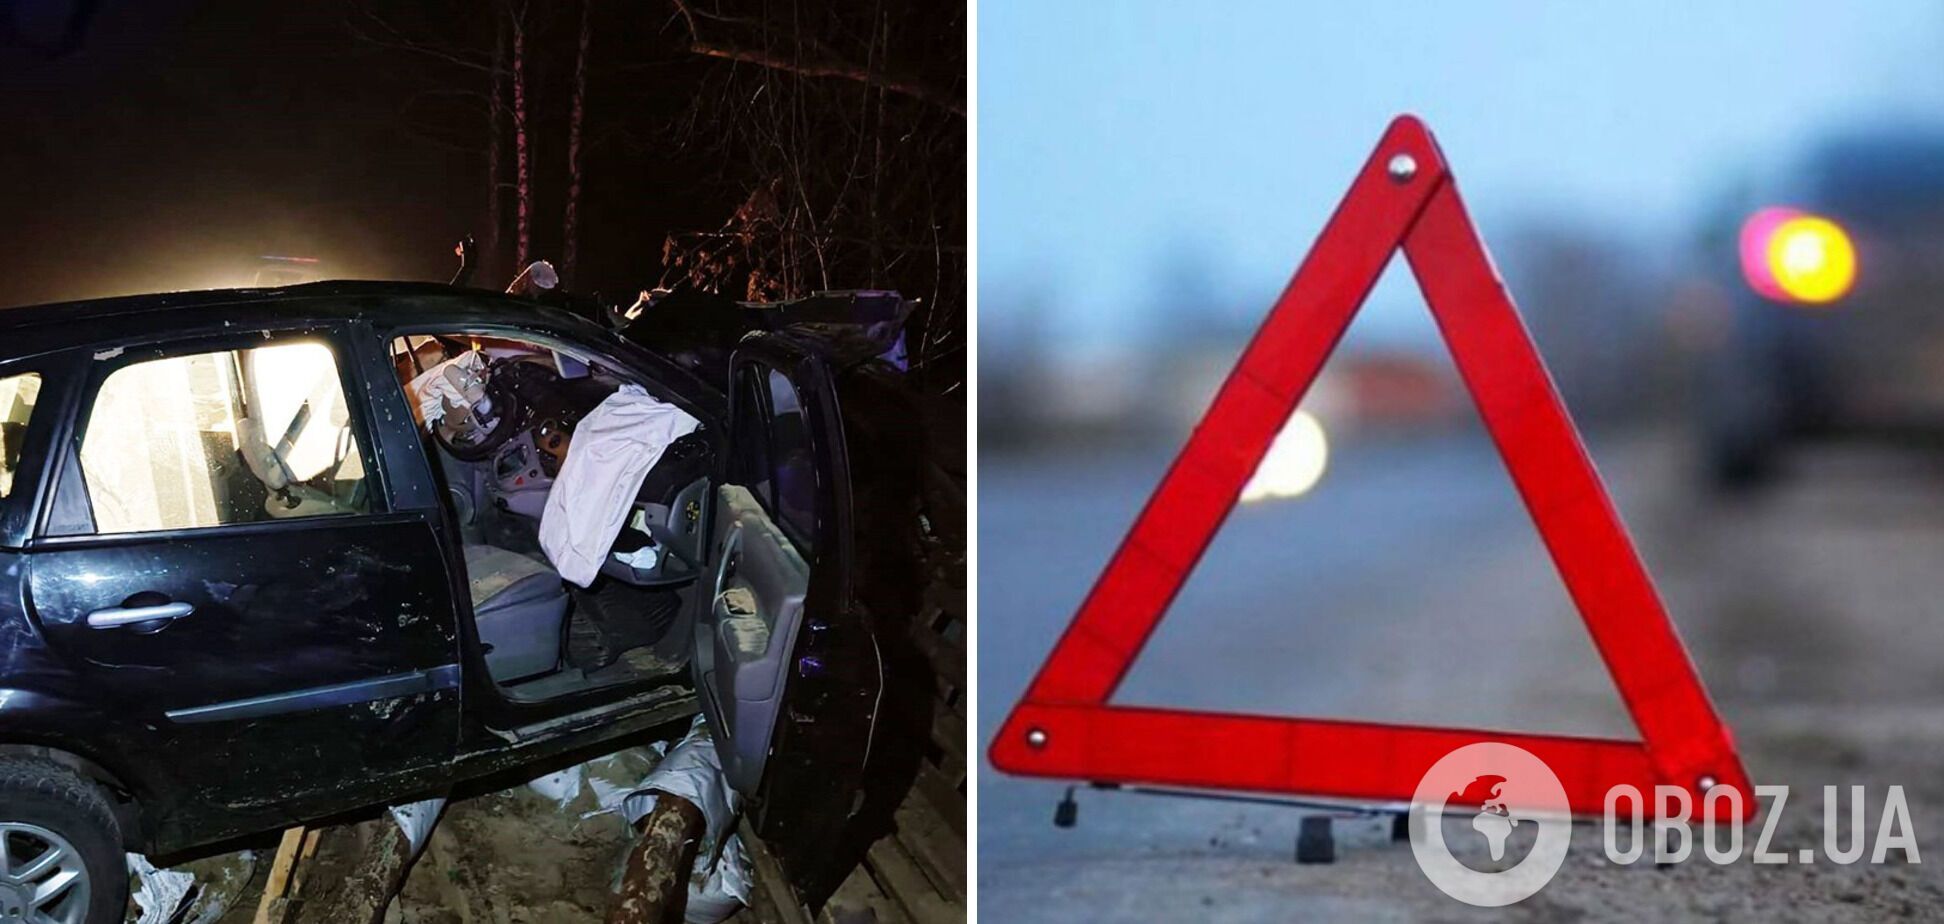 Влетів у блокпост: на Чернігівщині у ДТП загинув 23-річний водій. Фото
